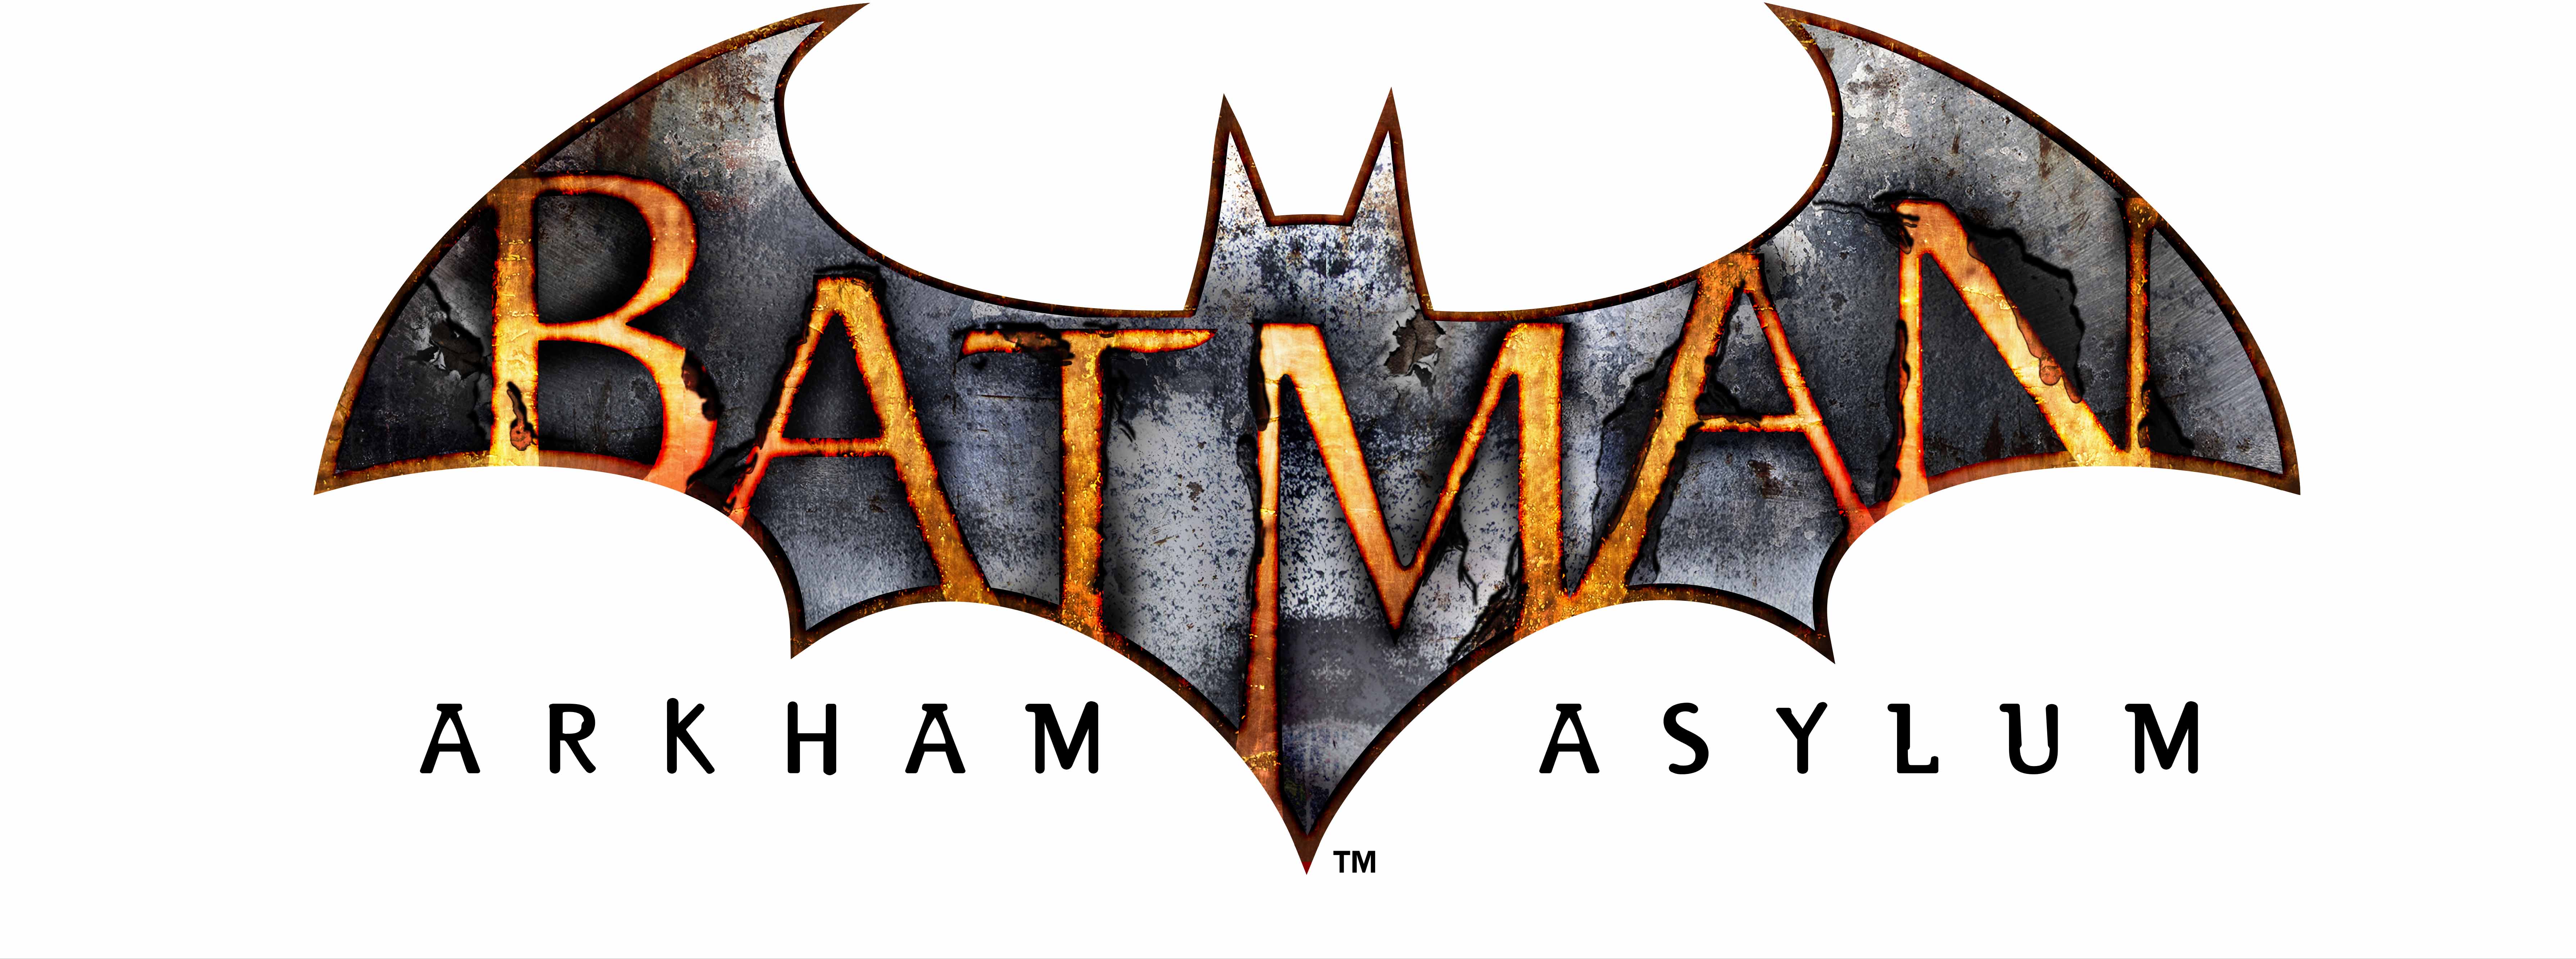 batman symbol arkham asylum